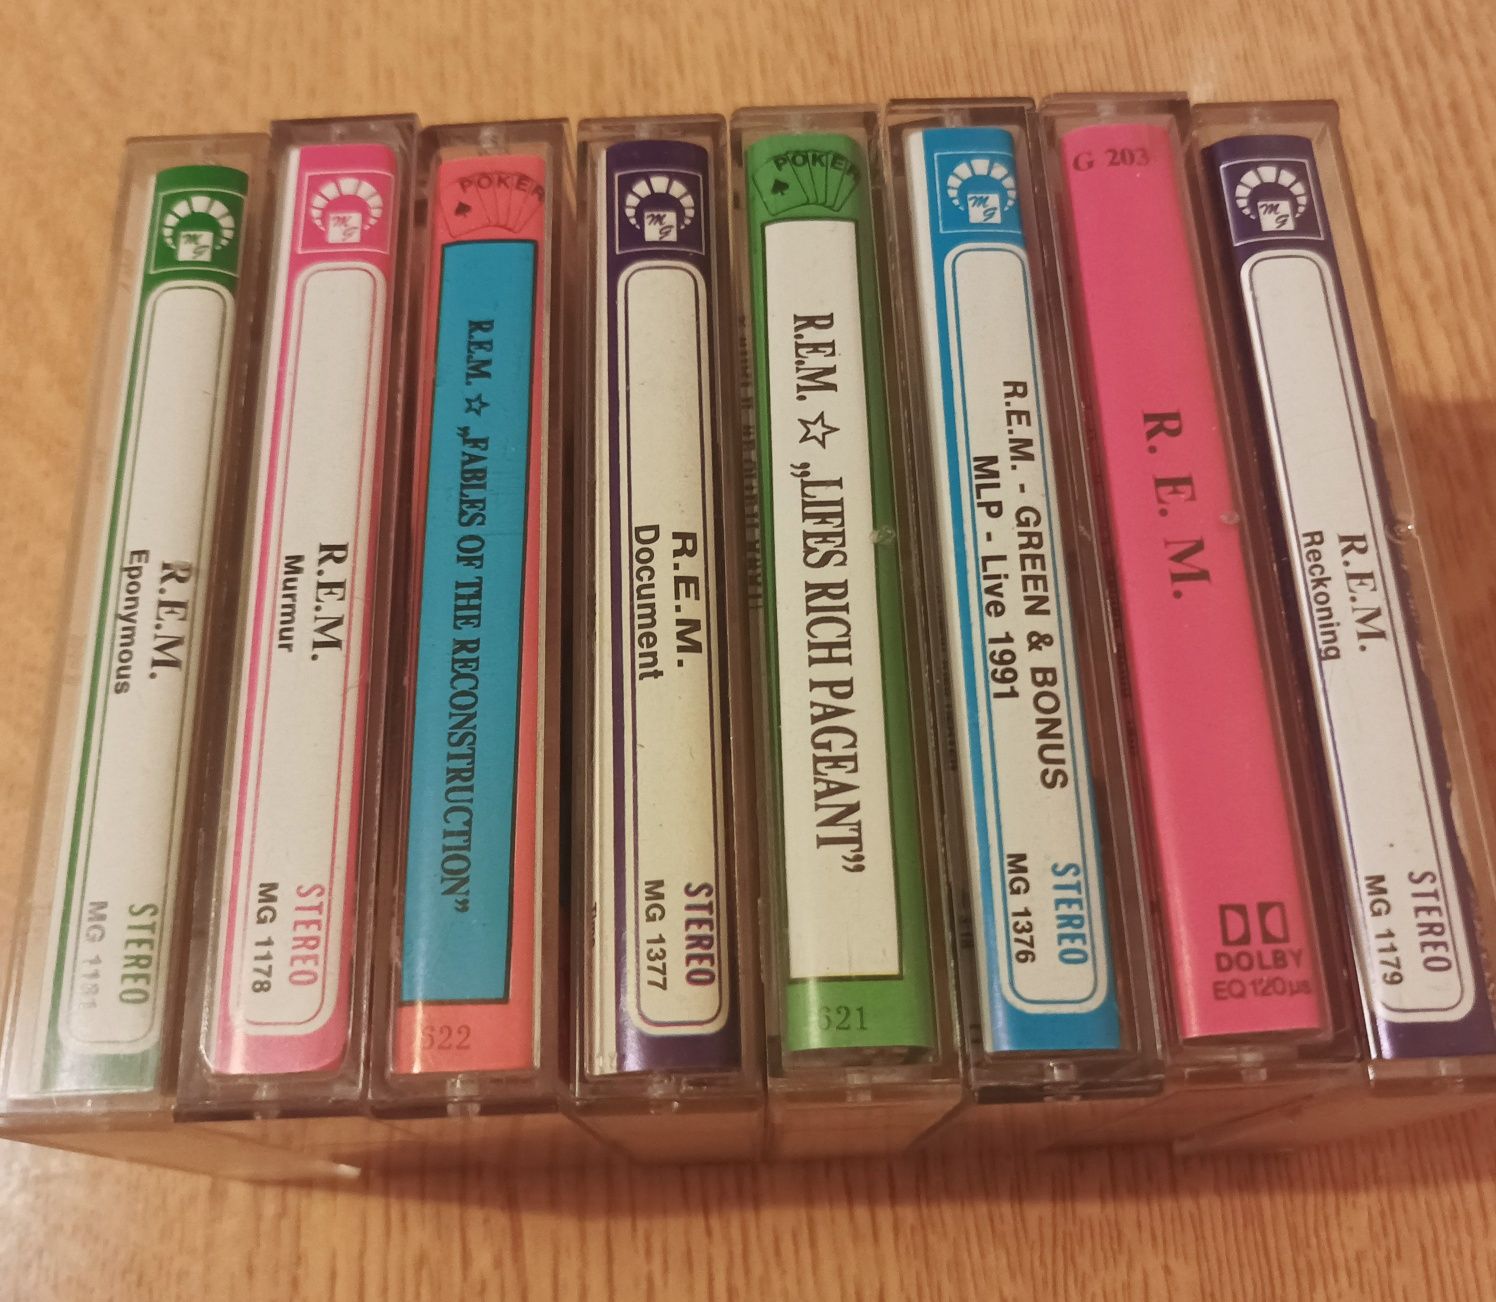 Kasety audio zespół R.E.M 8 pozycji.